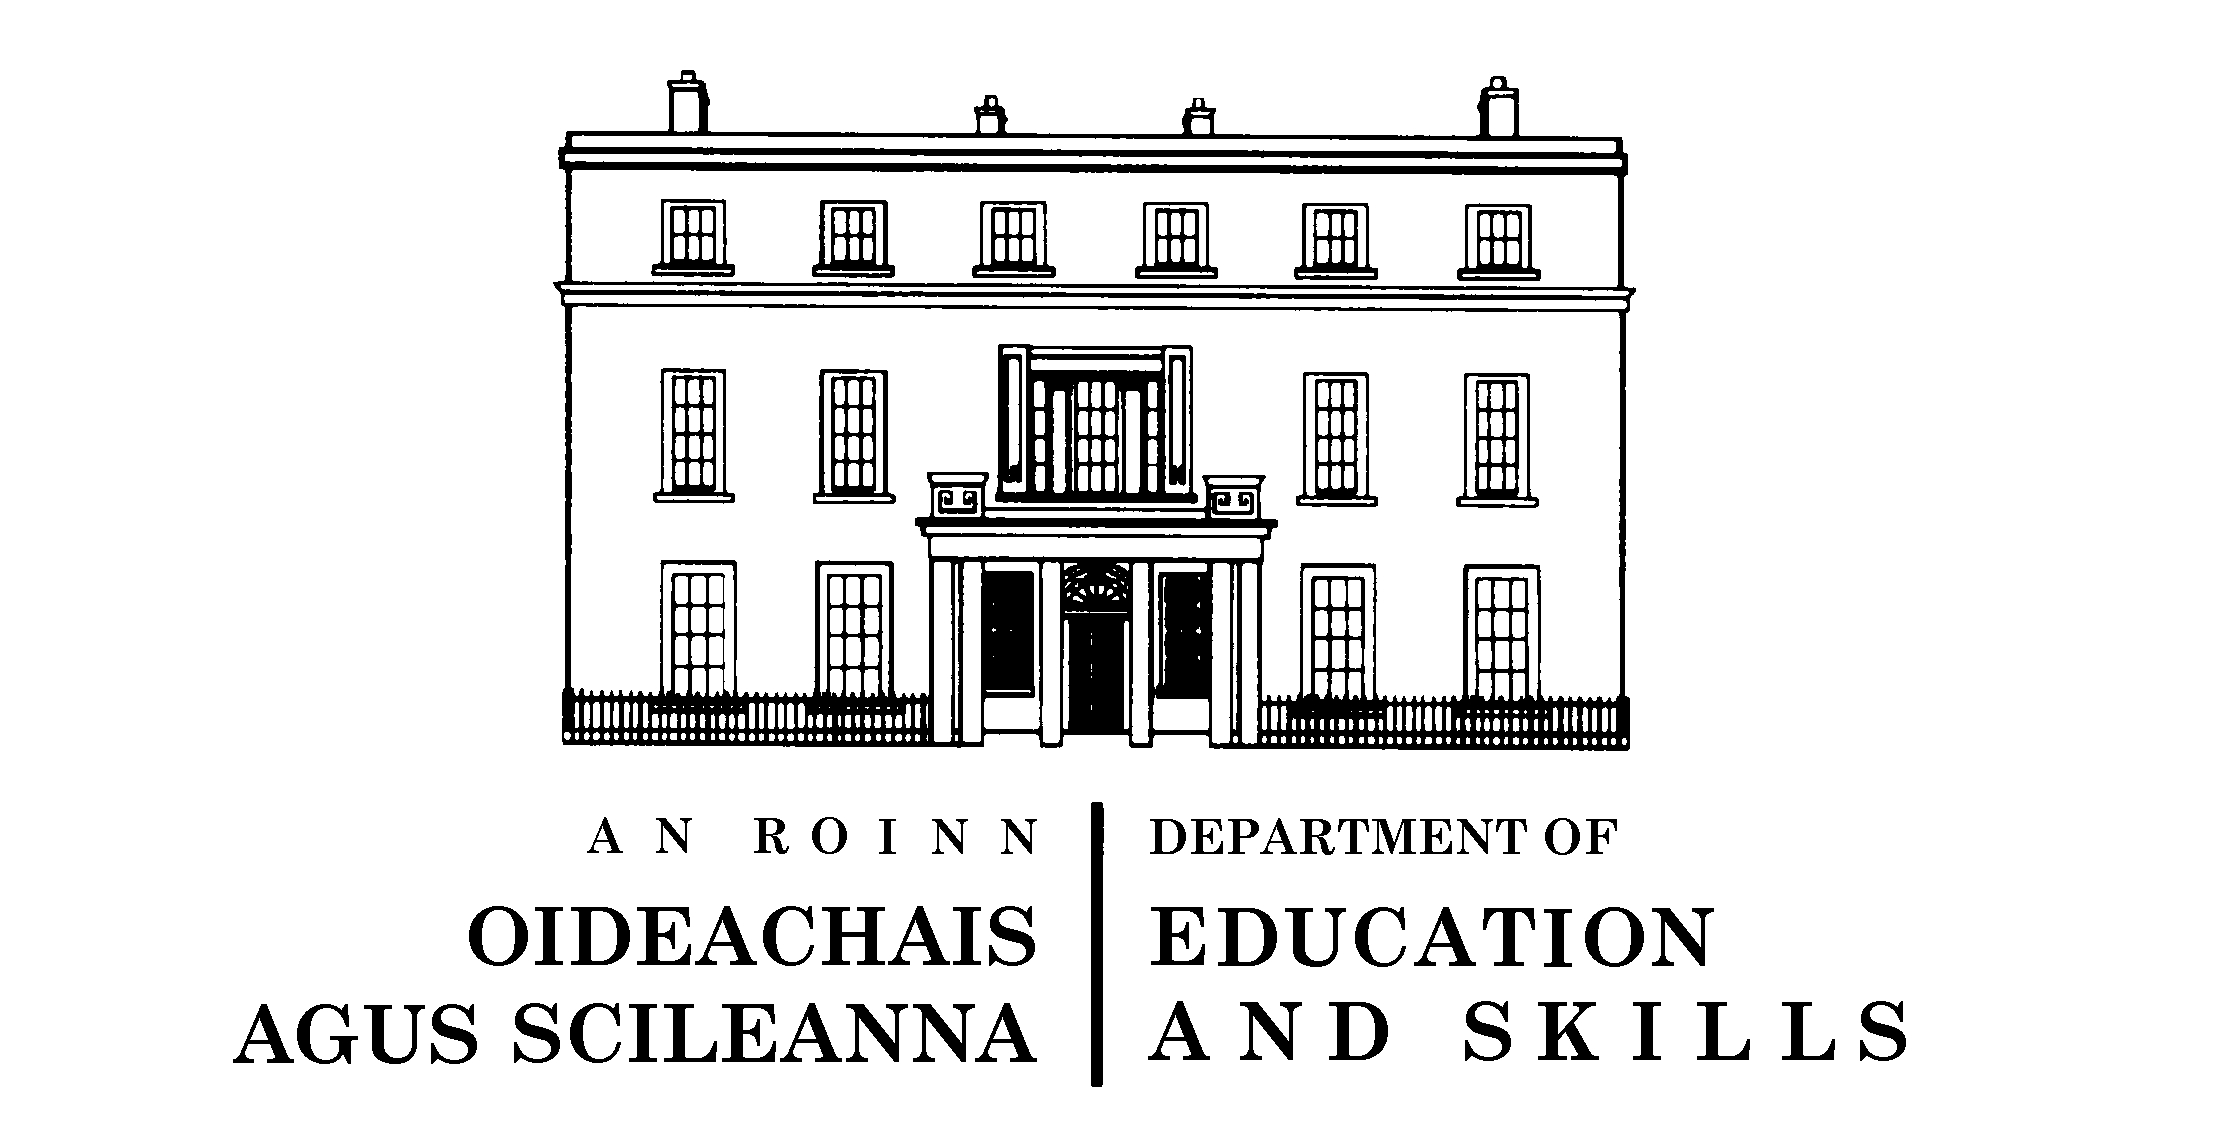 Konsultacje ministerialne w sprawie szkół podstawowych w Irlandii